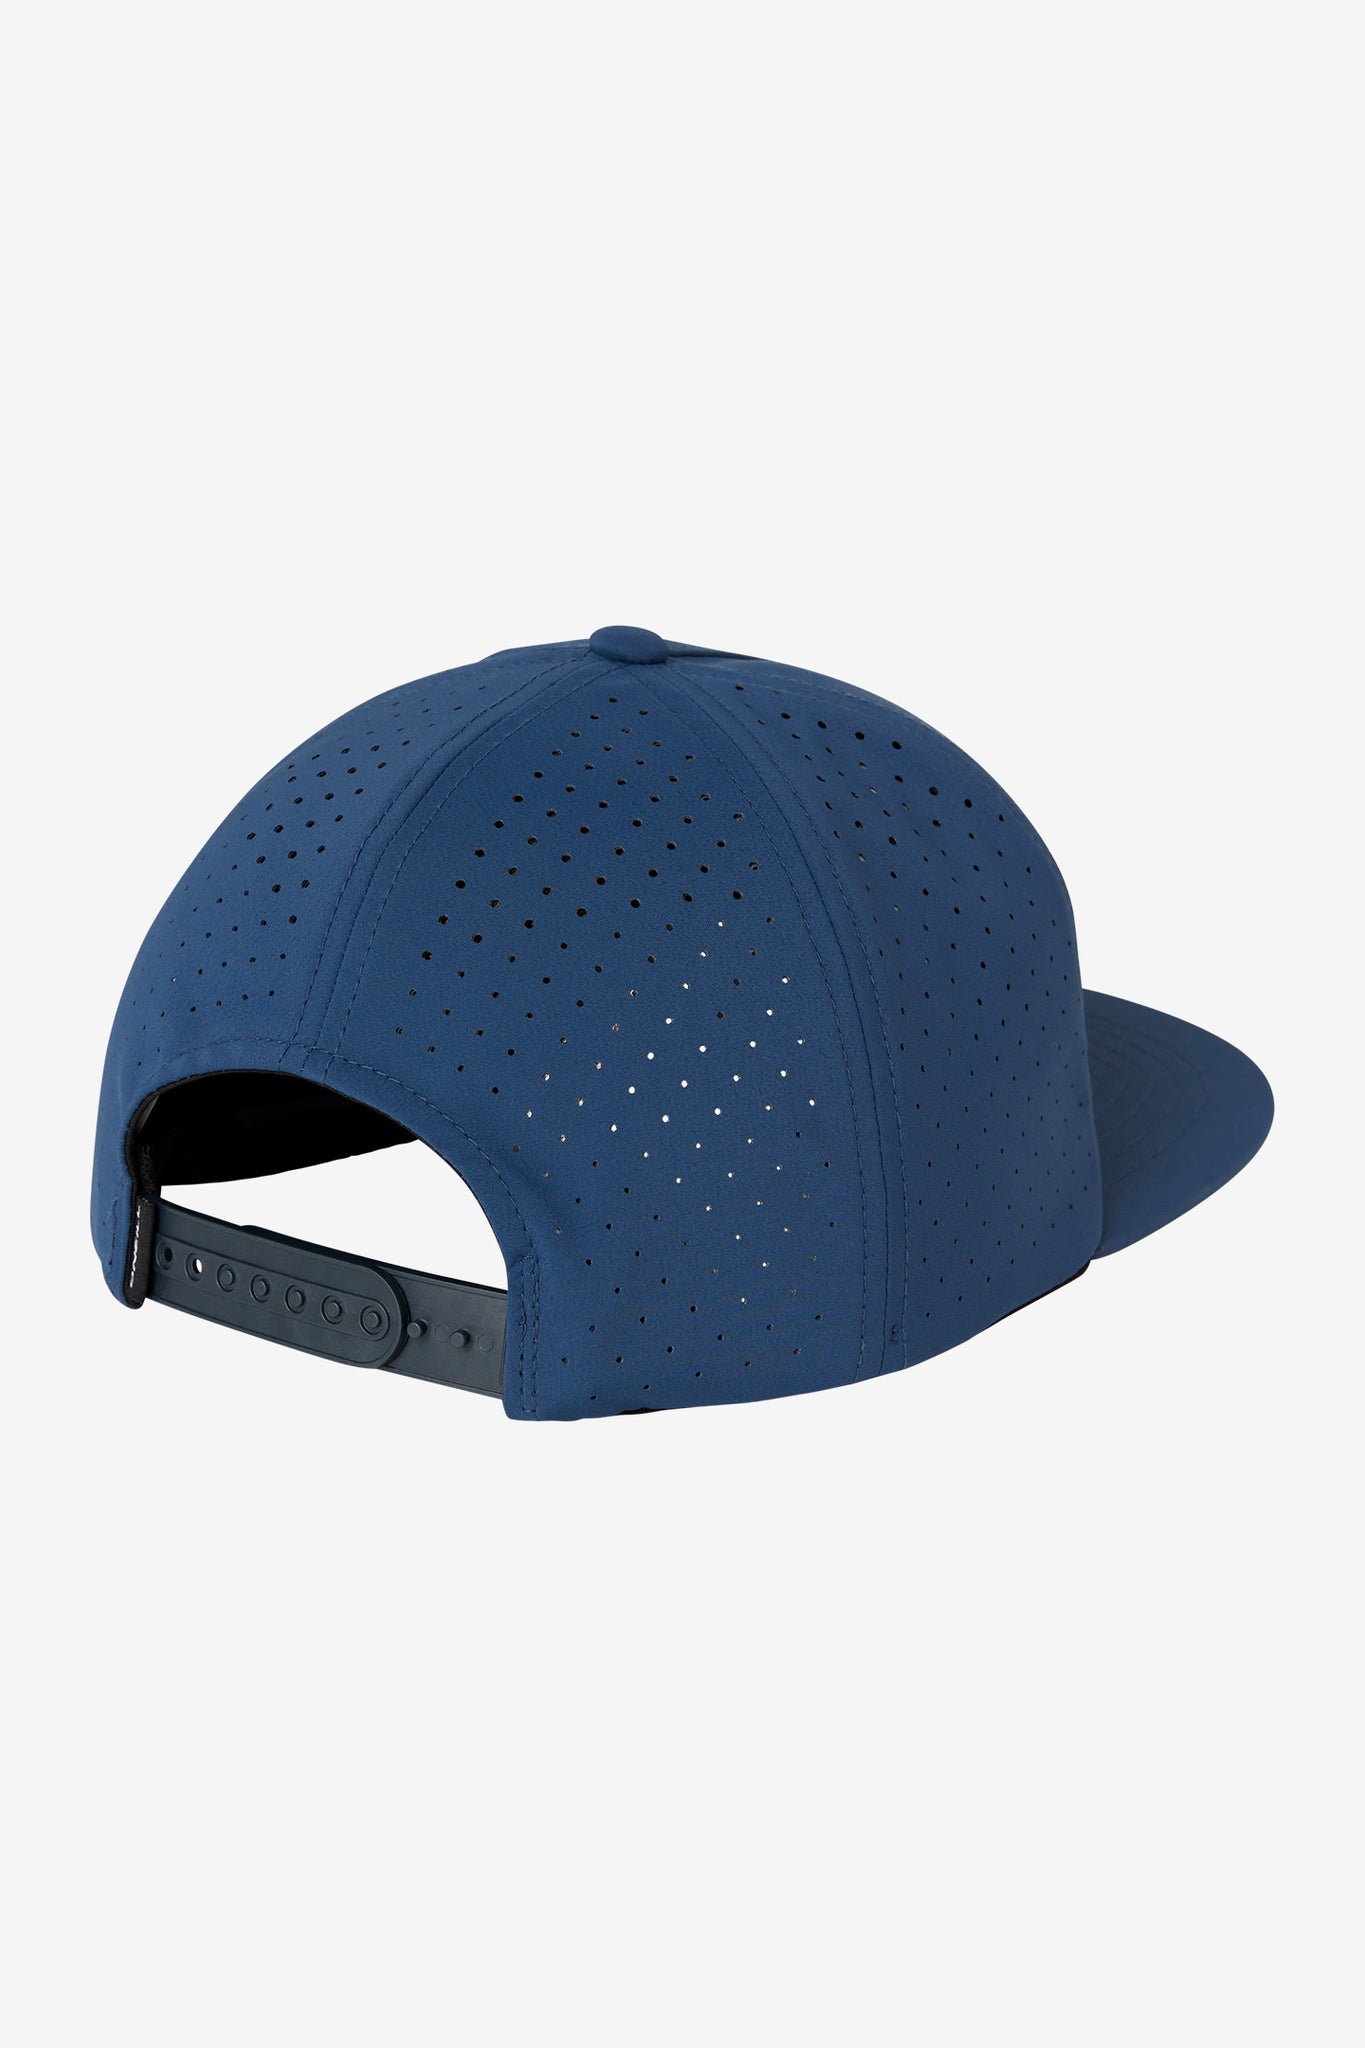 O'Neill Men's Trvlr Navigate Hybrid Snapback Hat in Indigo, Elastane/Polyester